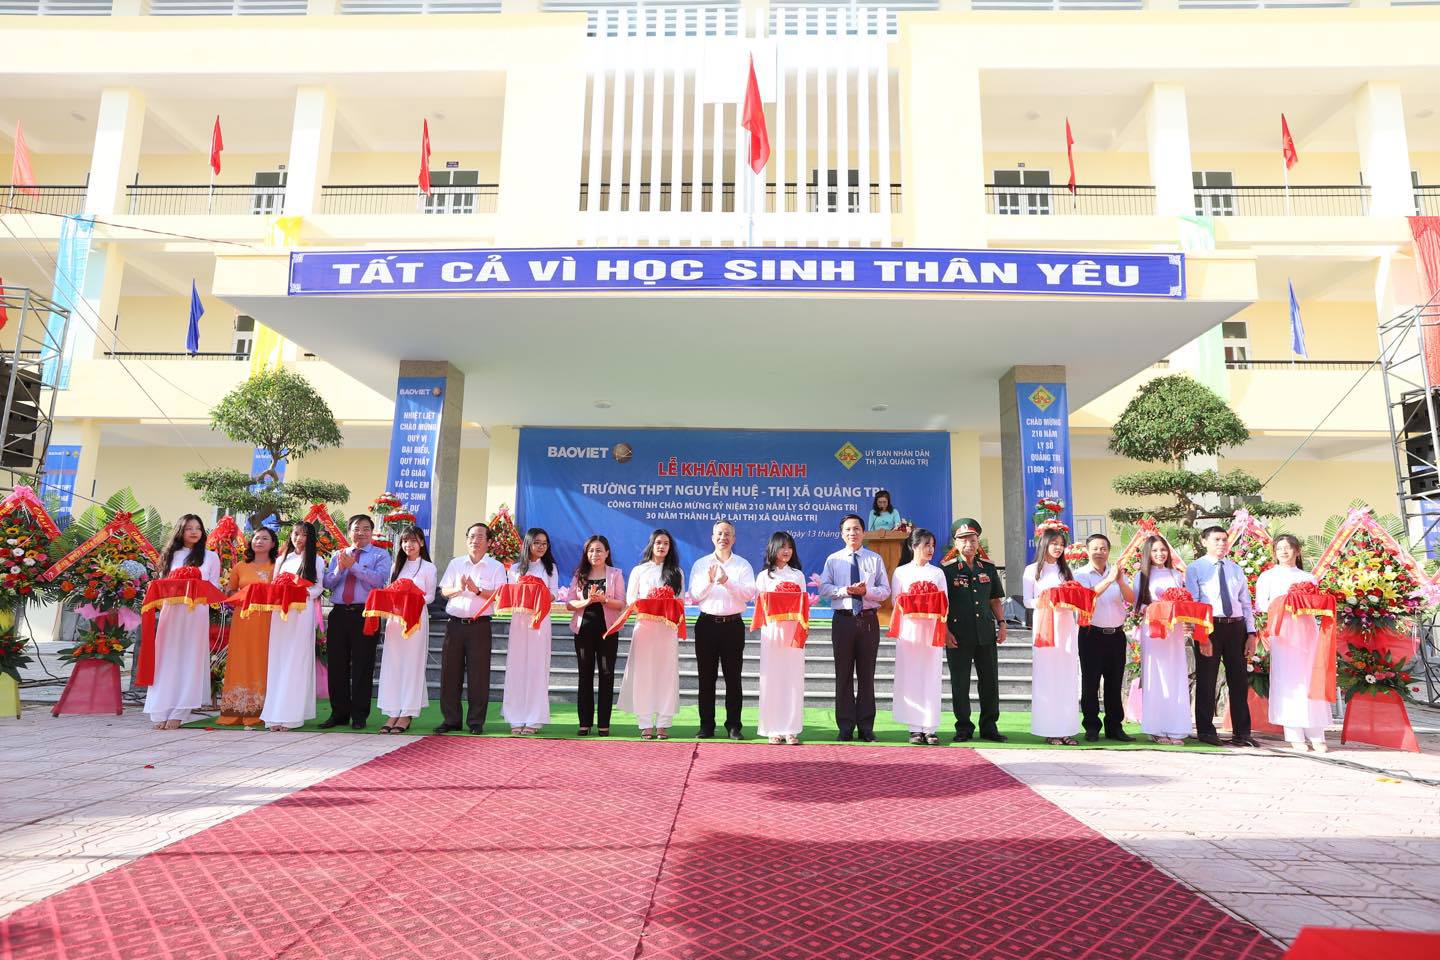  Tập đoàn Bảo Việt phối hợp cùng UBND tỉnh Quảng Trị tổ chức lễ khánh thành Trường THPT Nguyễn Huệ.